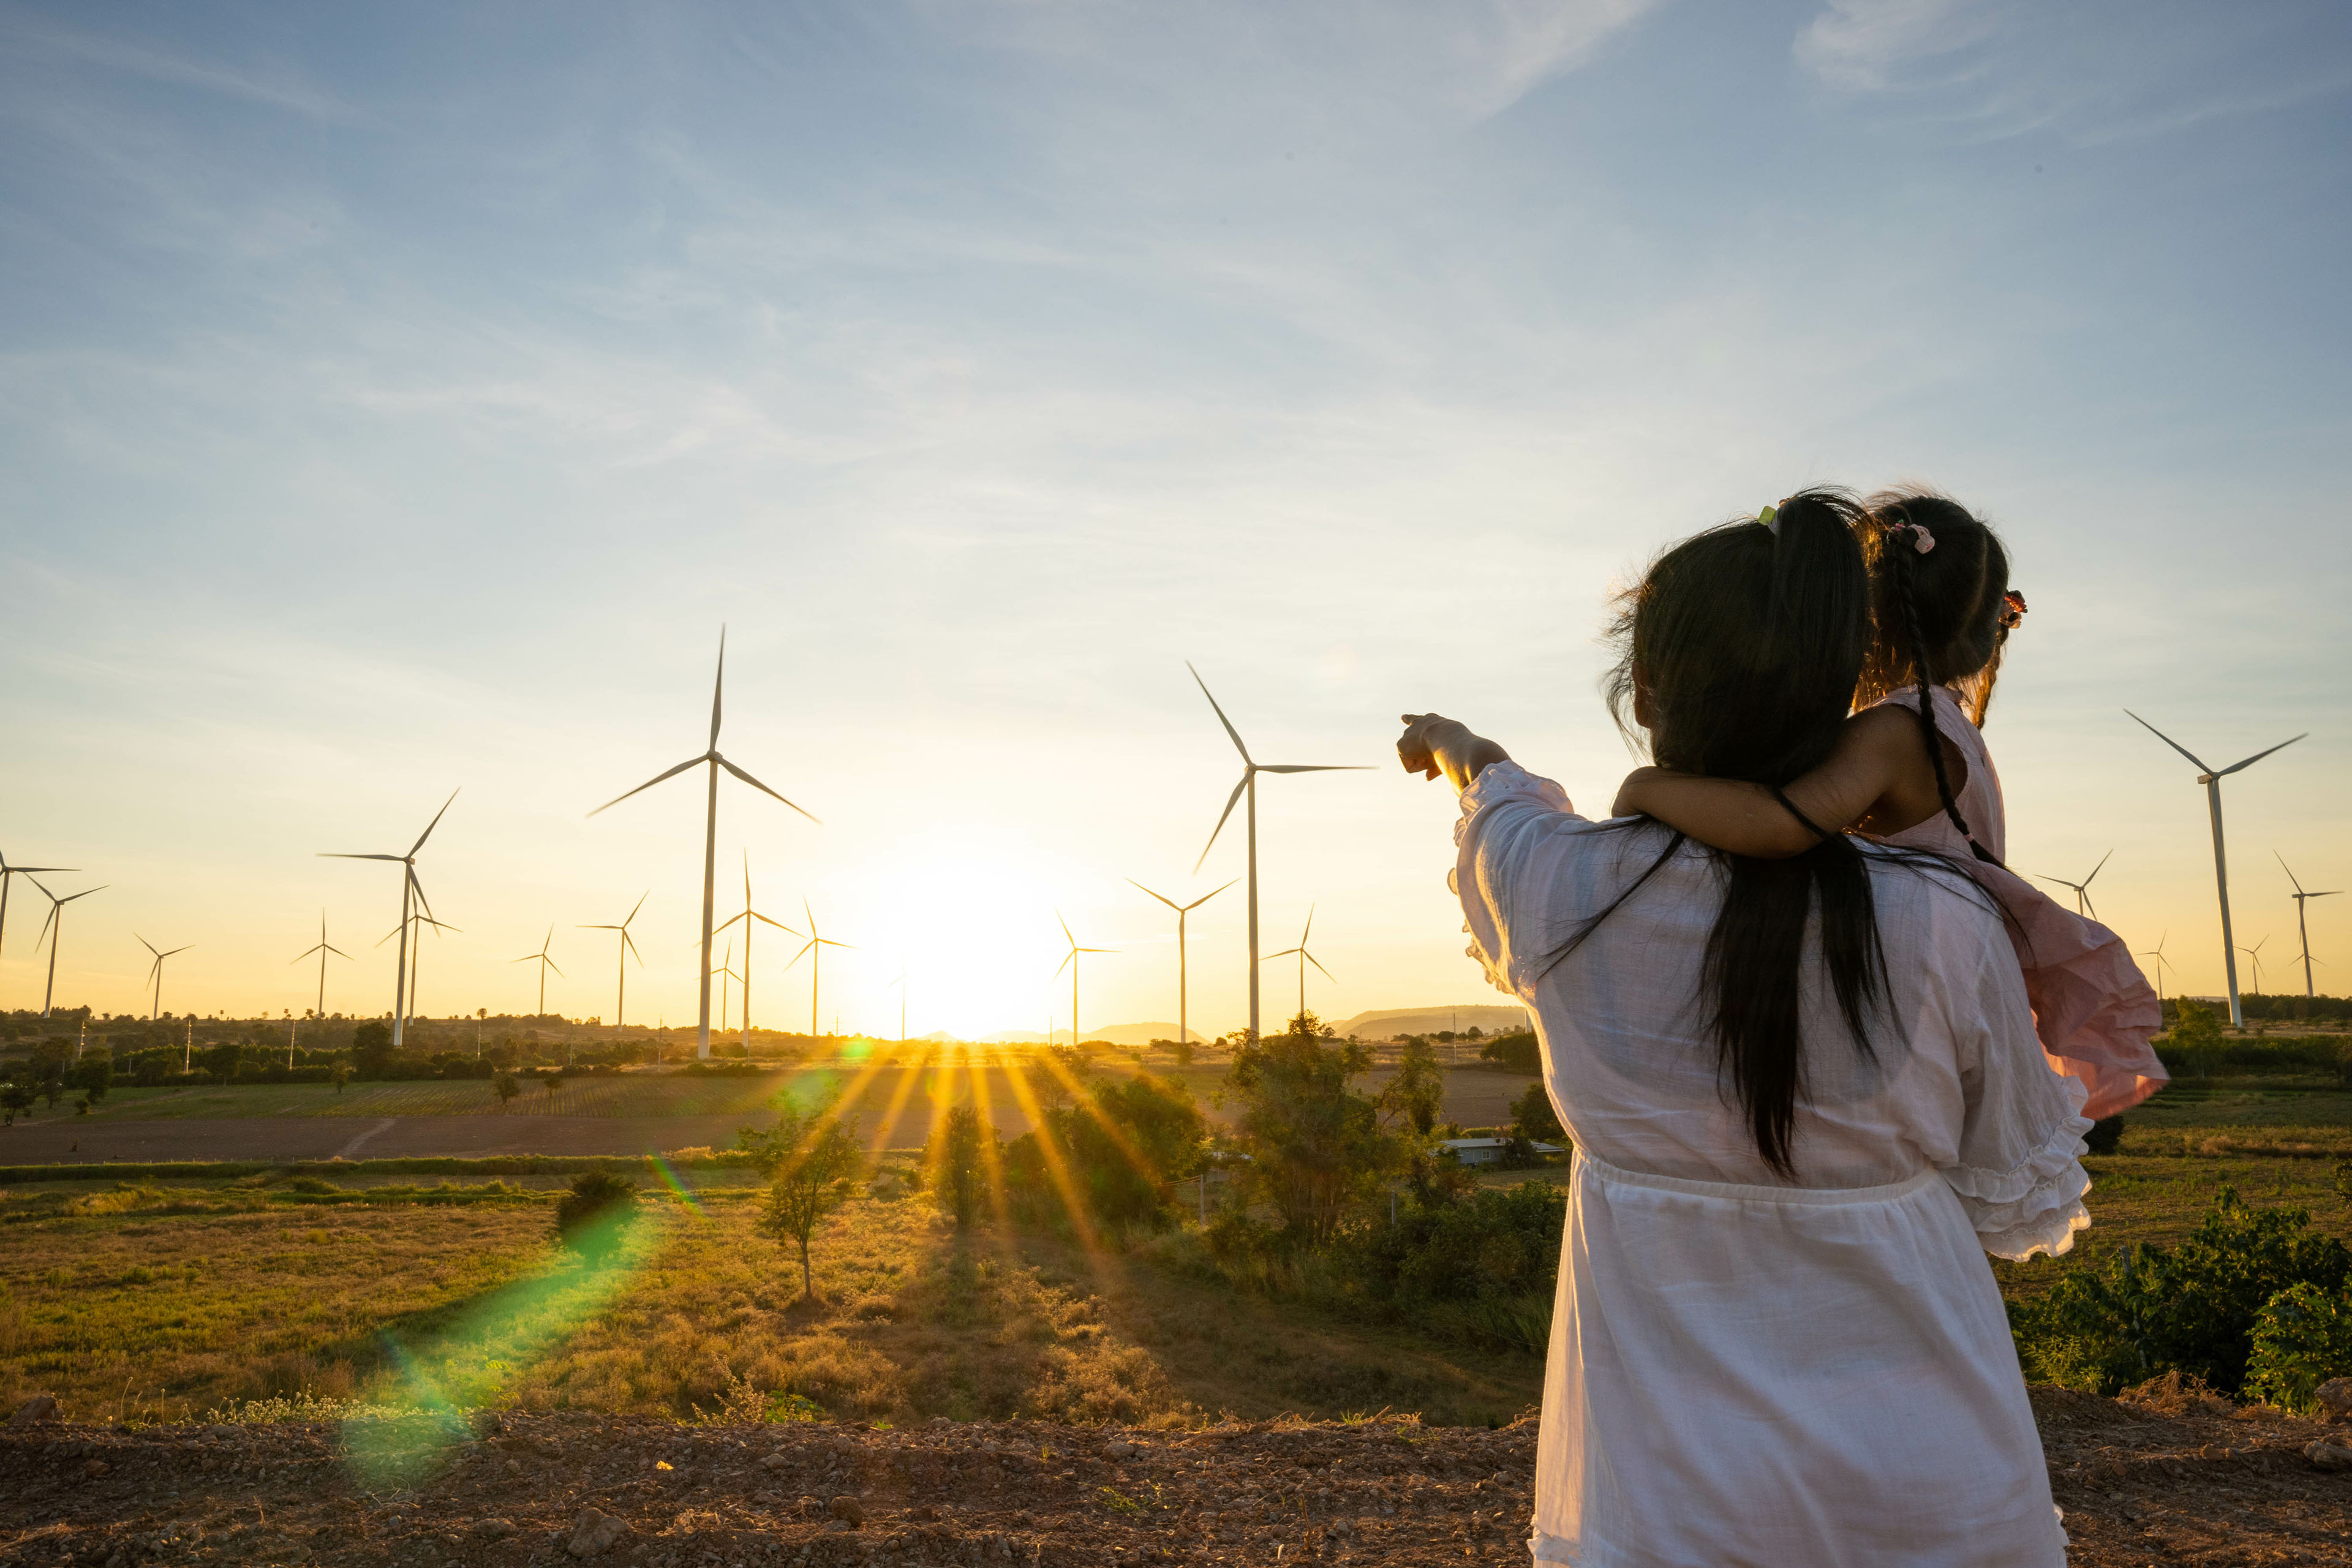 Una mujer cargando a una niña, mientras señala con su mano izquierda unos molinos de energía eólica que se ven en el horizonte